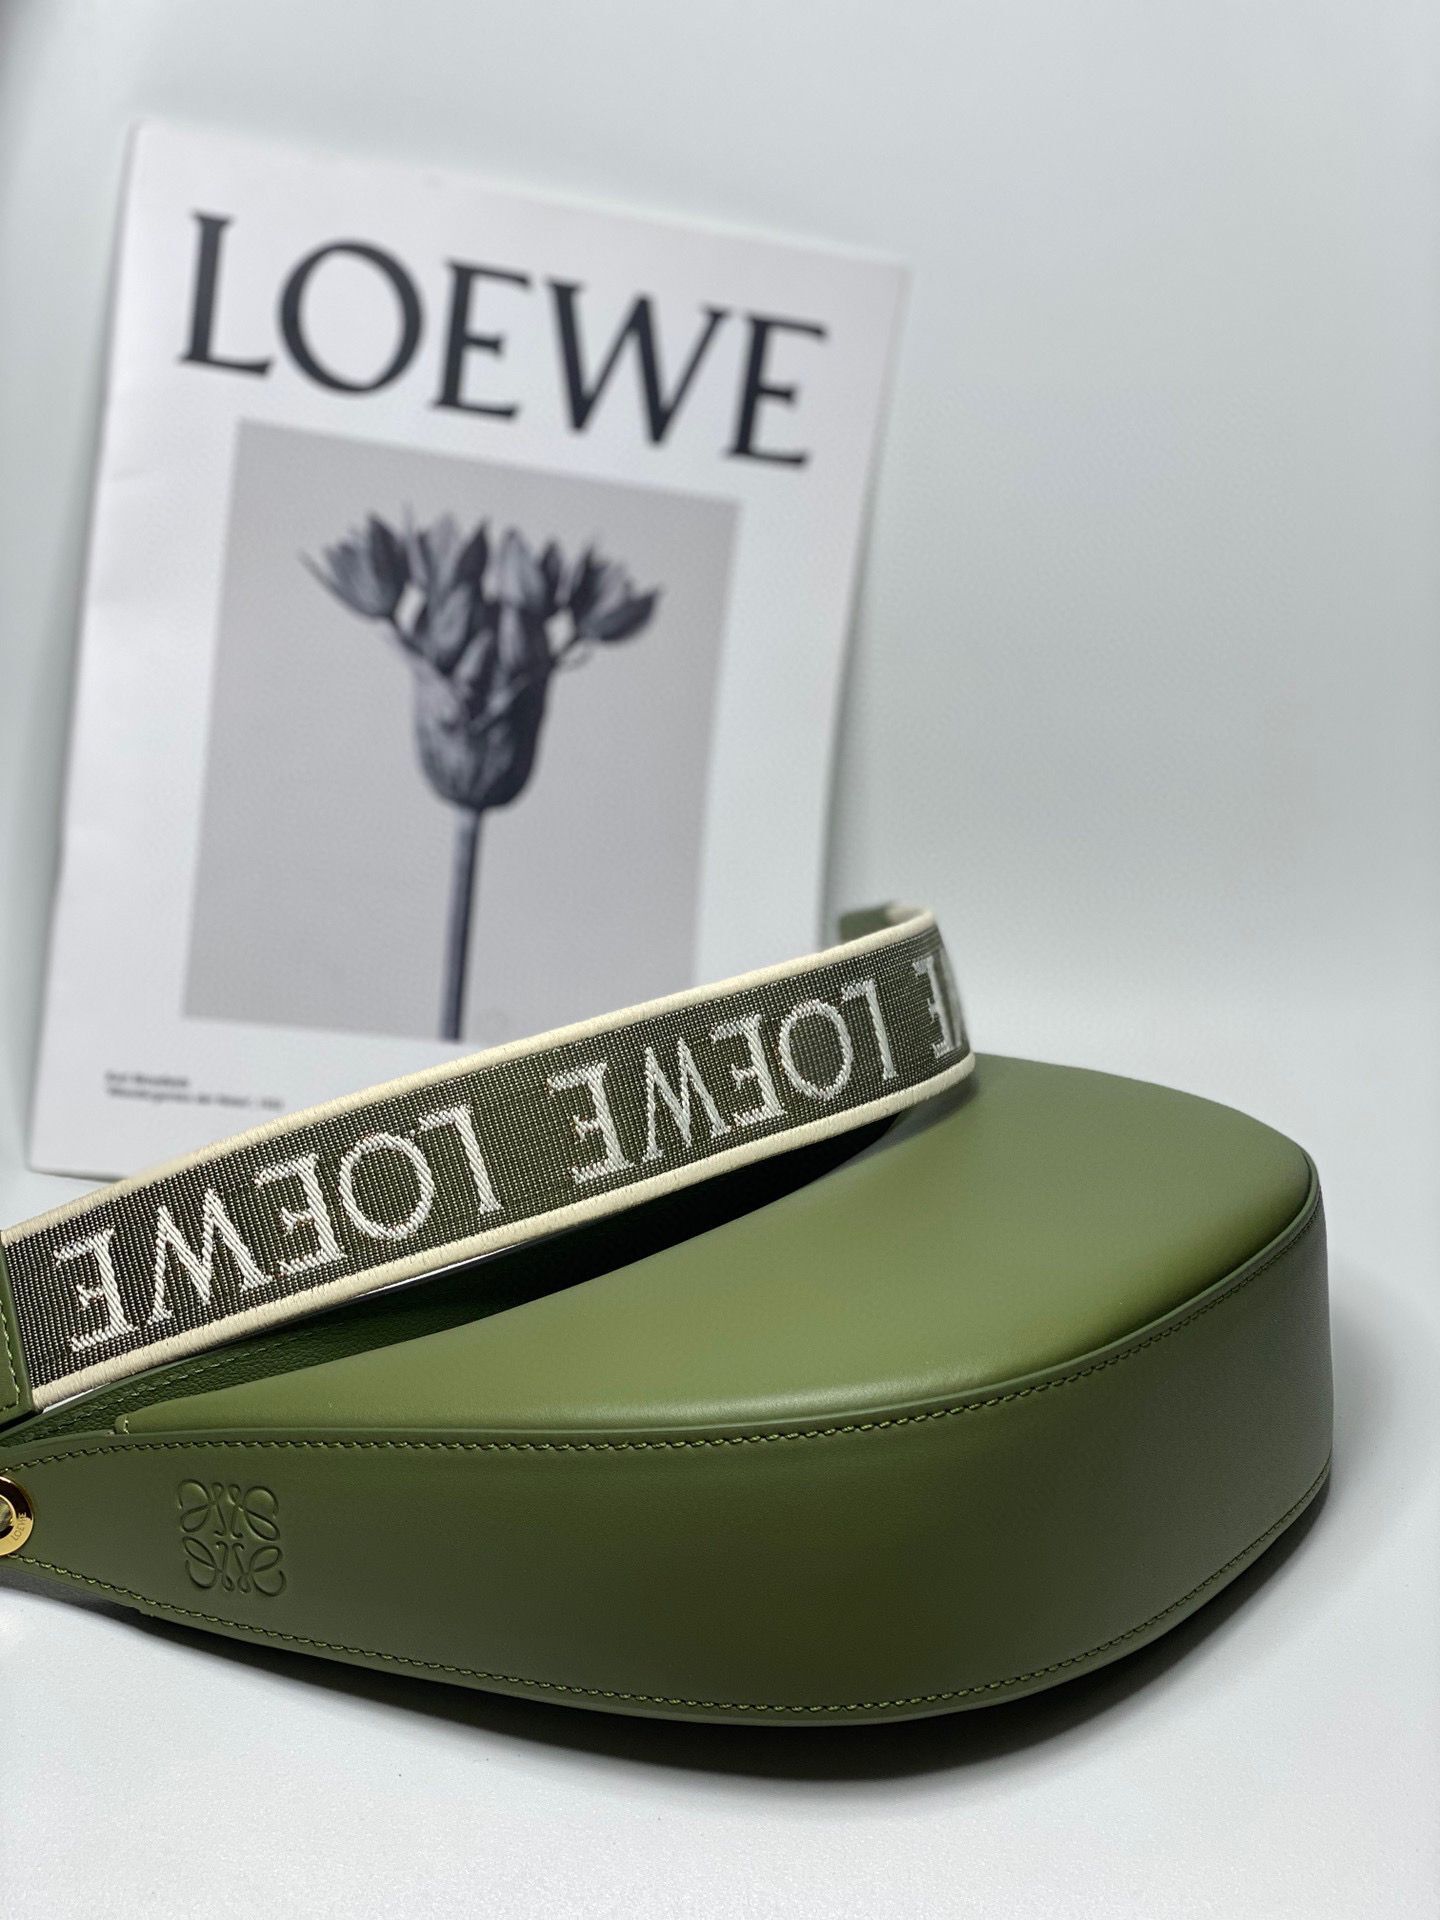 Loewe Original Shoulder Handbag LE30210 Green